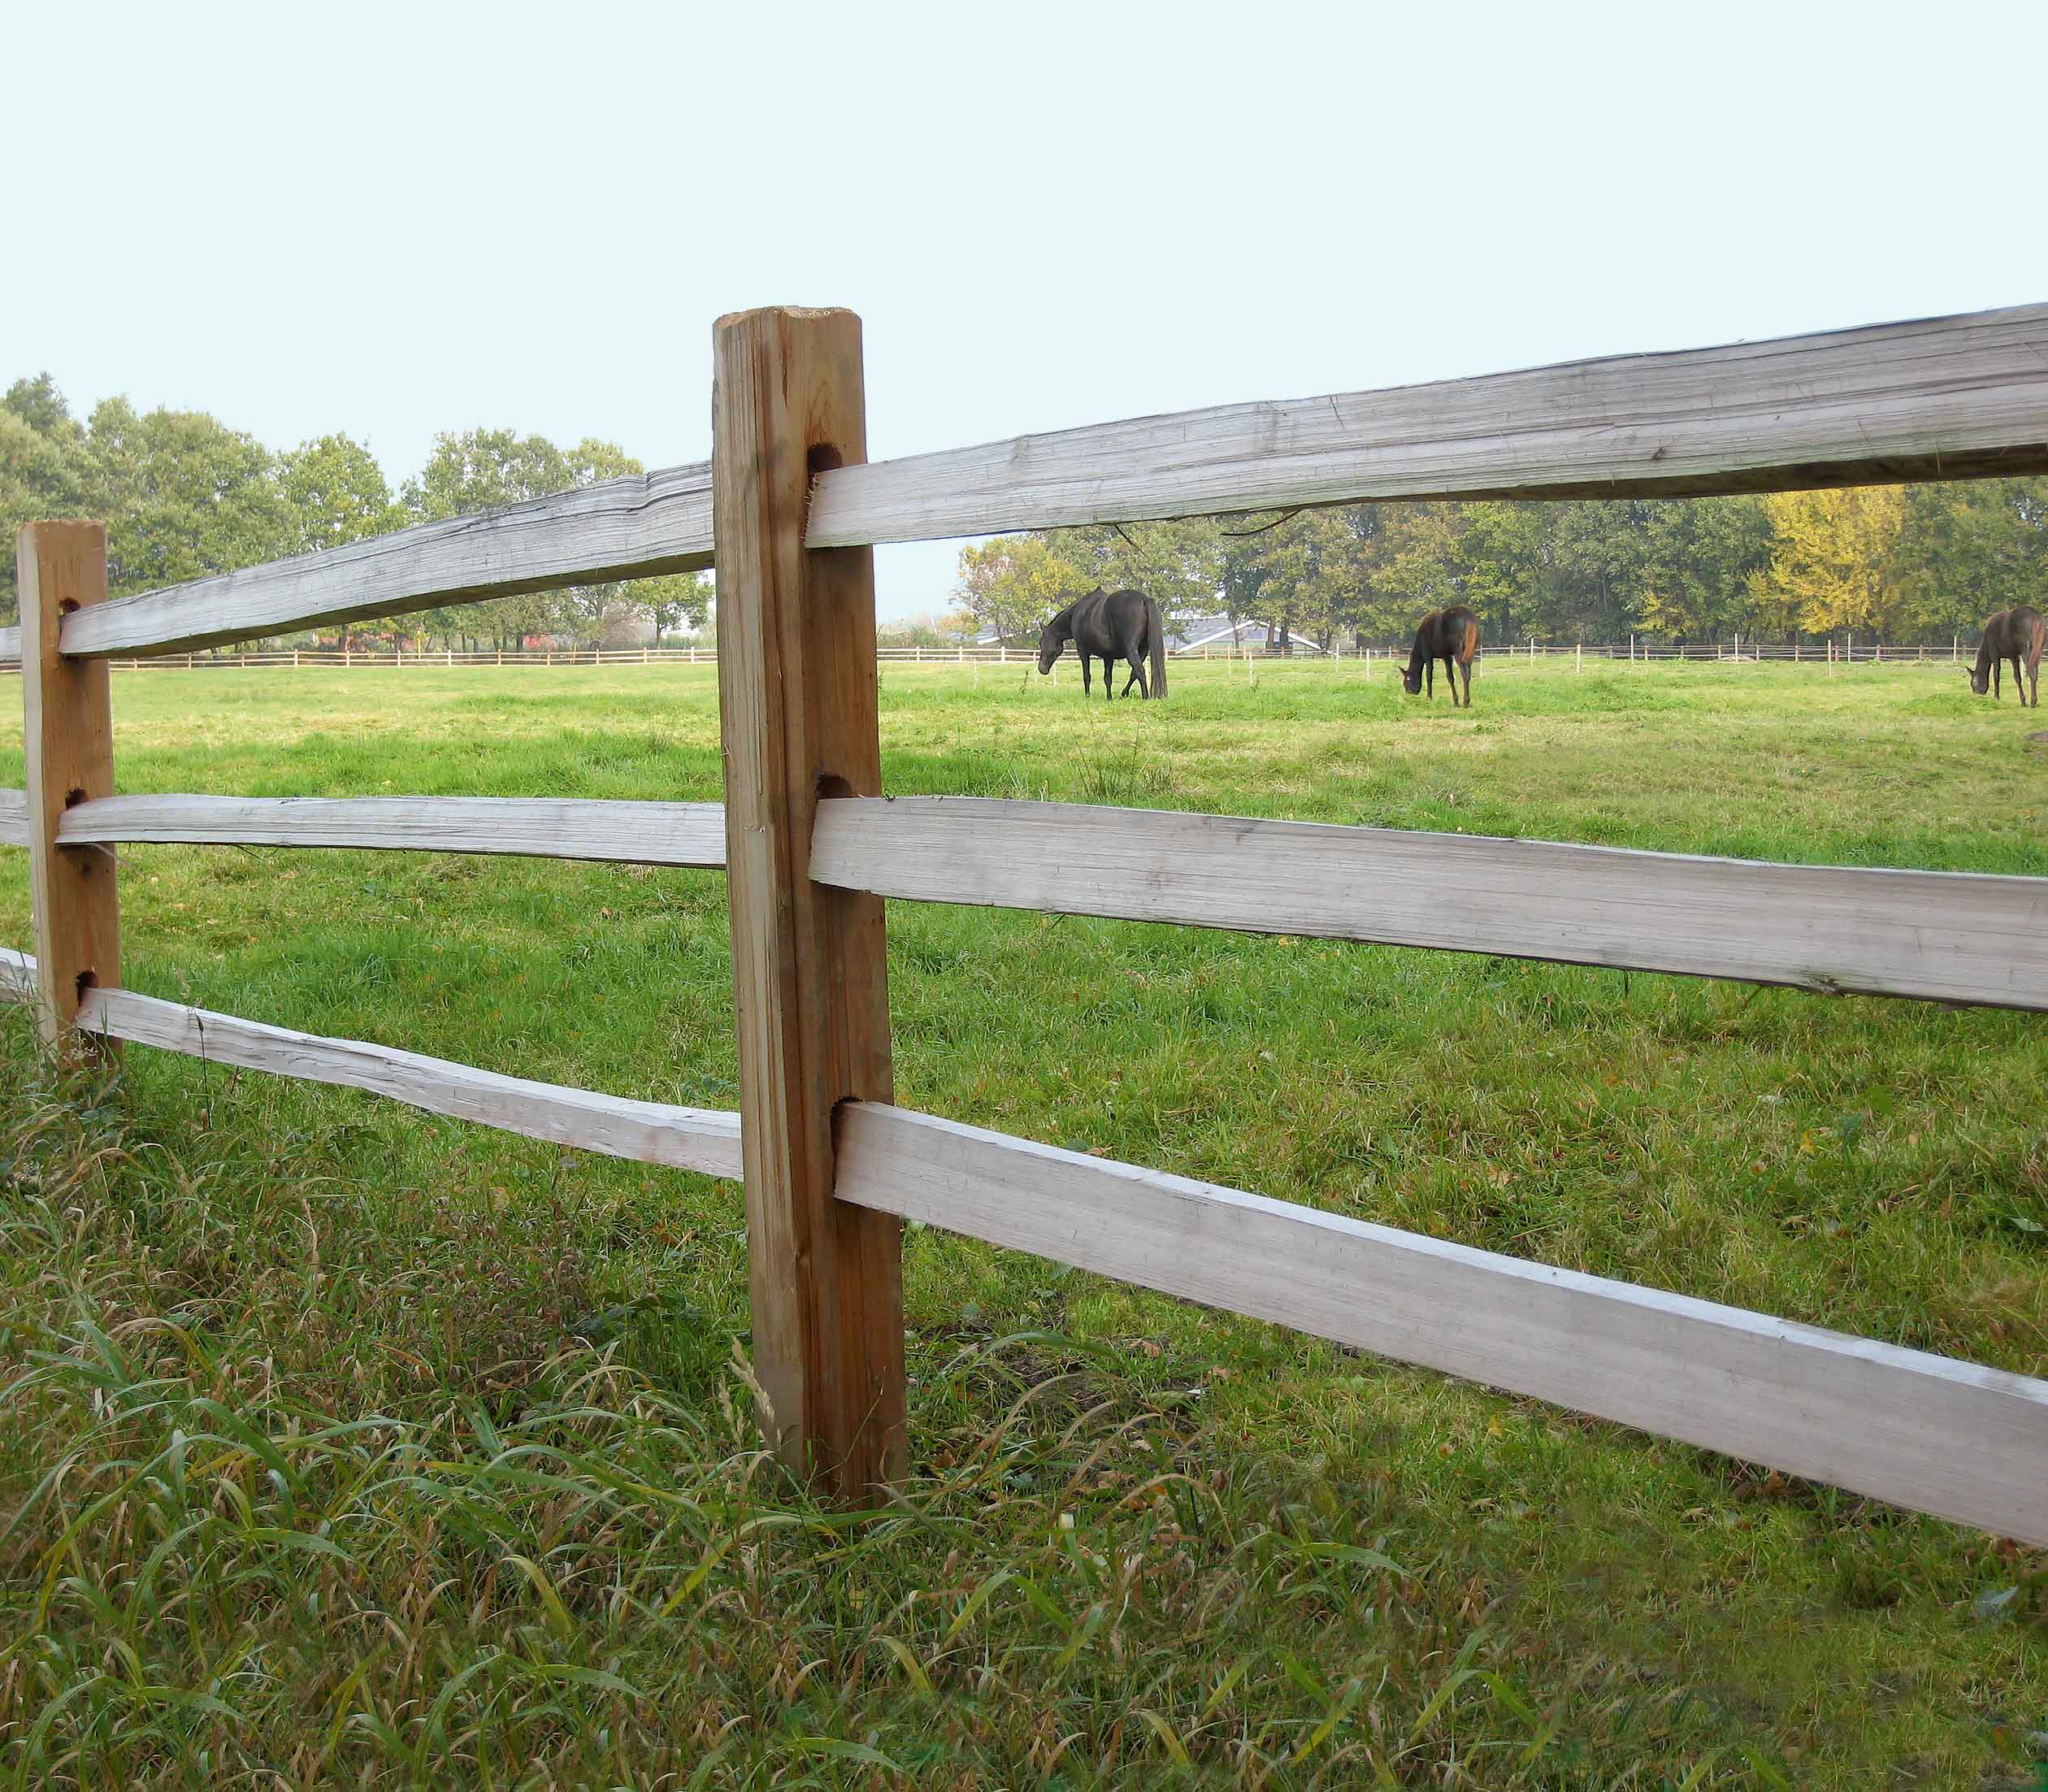 Mellan lamellerna i ett rustikt häststängsel syns tre hästar som betar i en paddock.